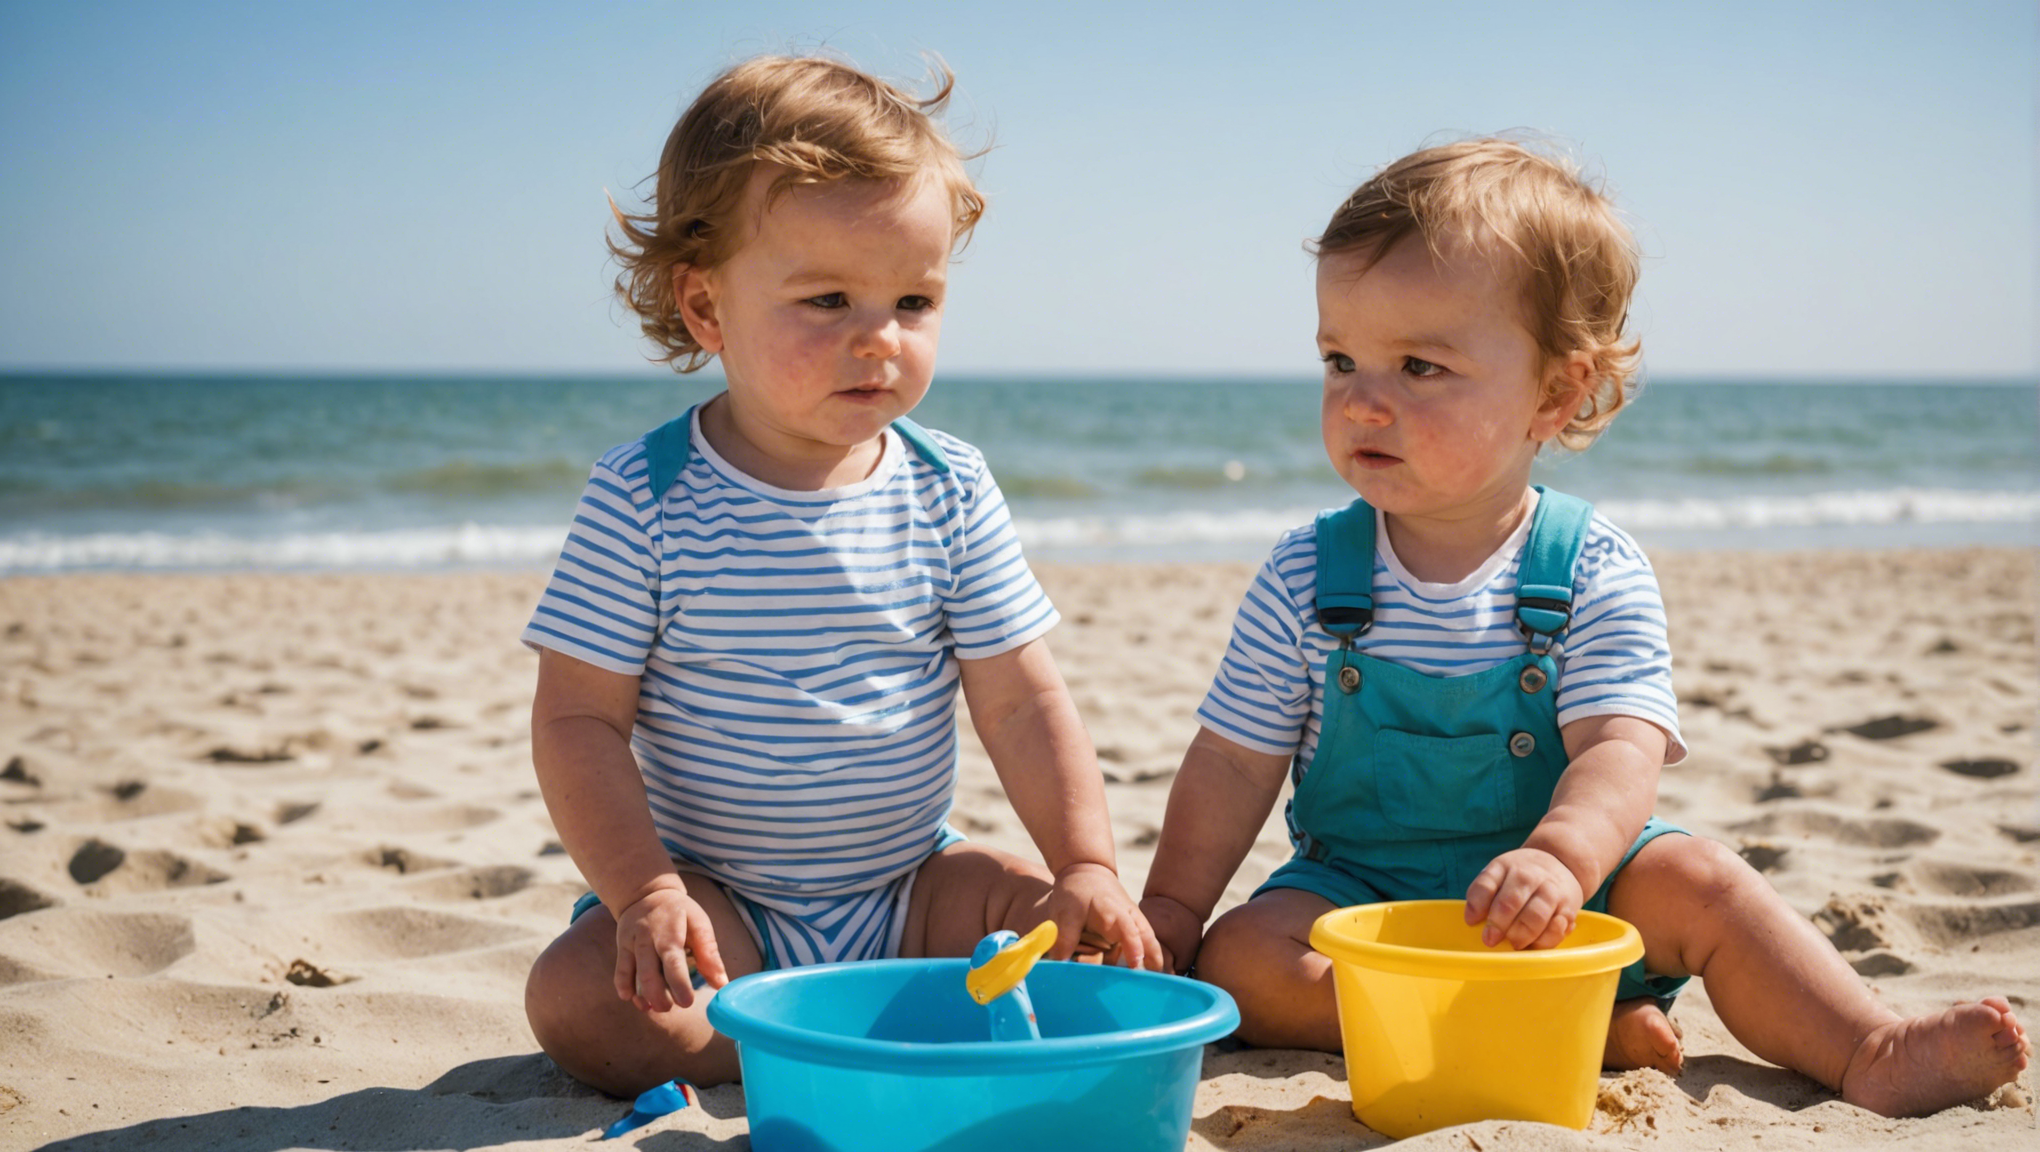 découvrez des conseils indispensables pour protéger votre bébé lors d'une sortie à la plage et profiter pleinement de ce moment en famille.